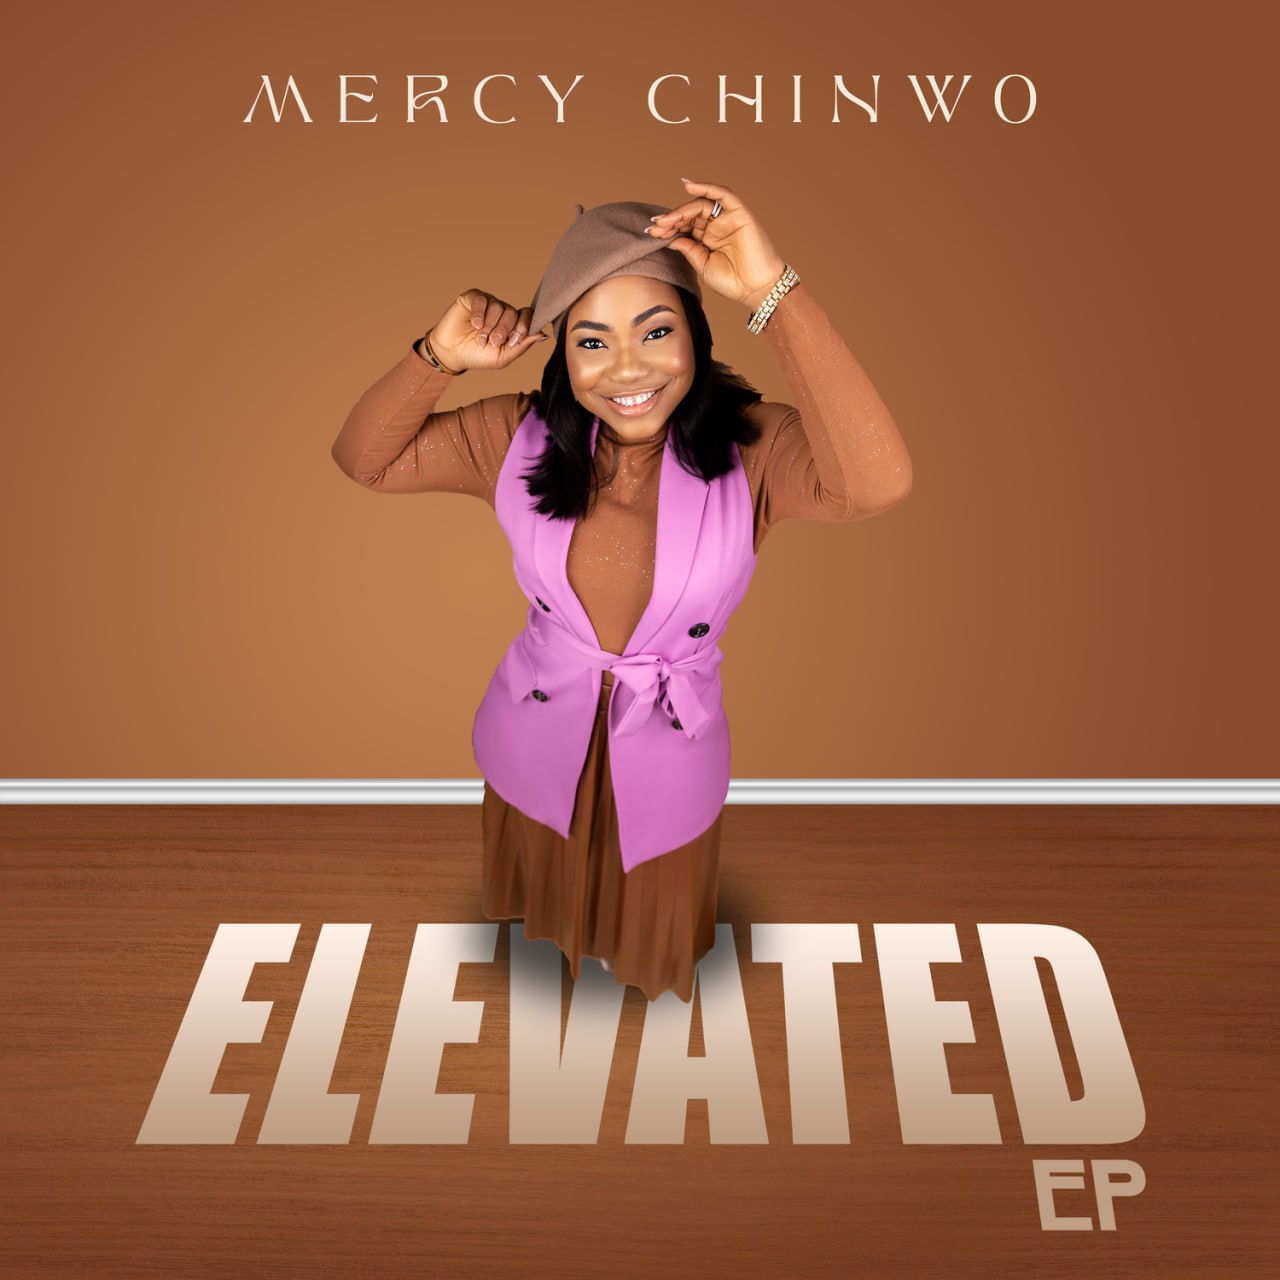 Lifter - Mercy Chinwo